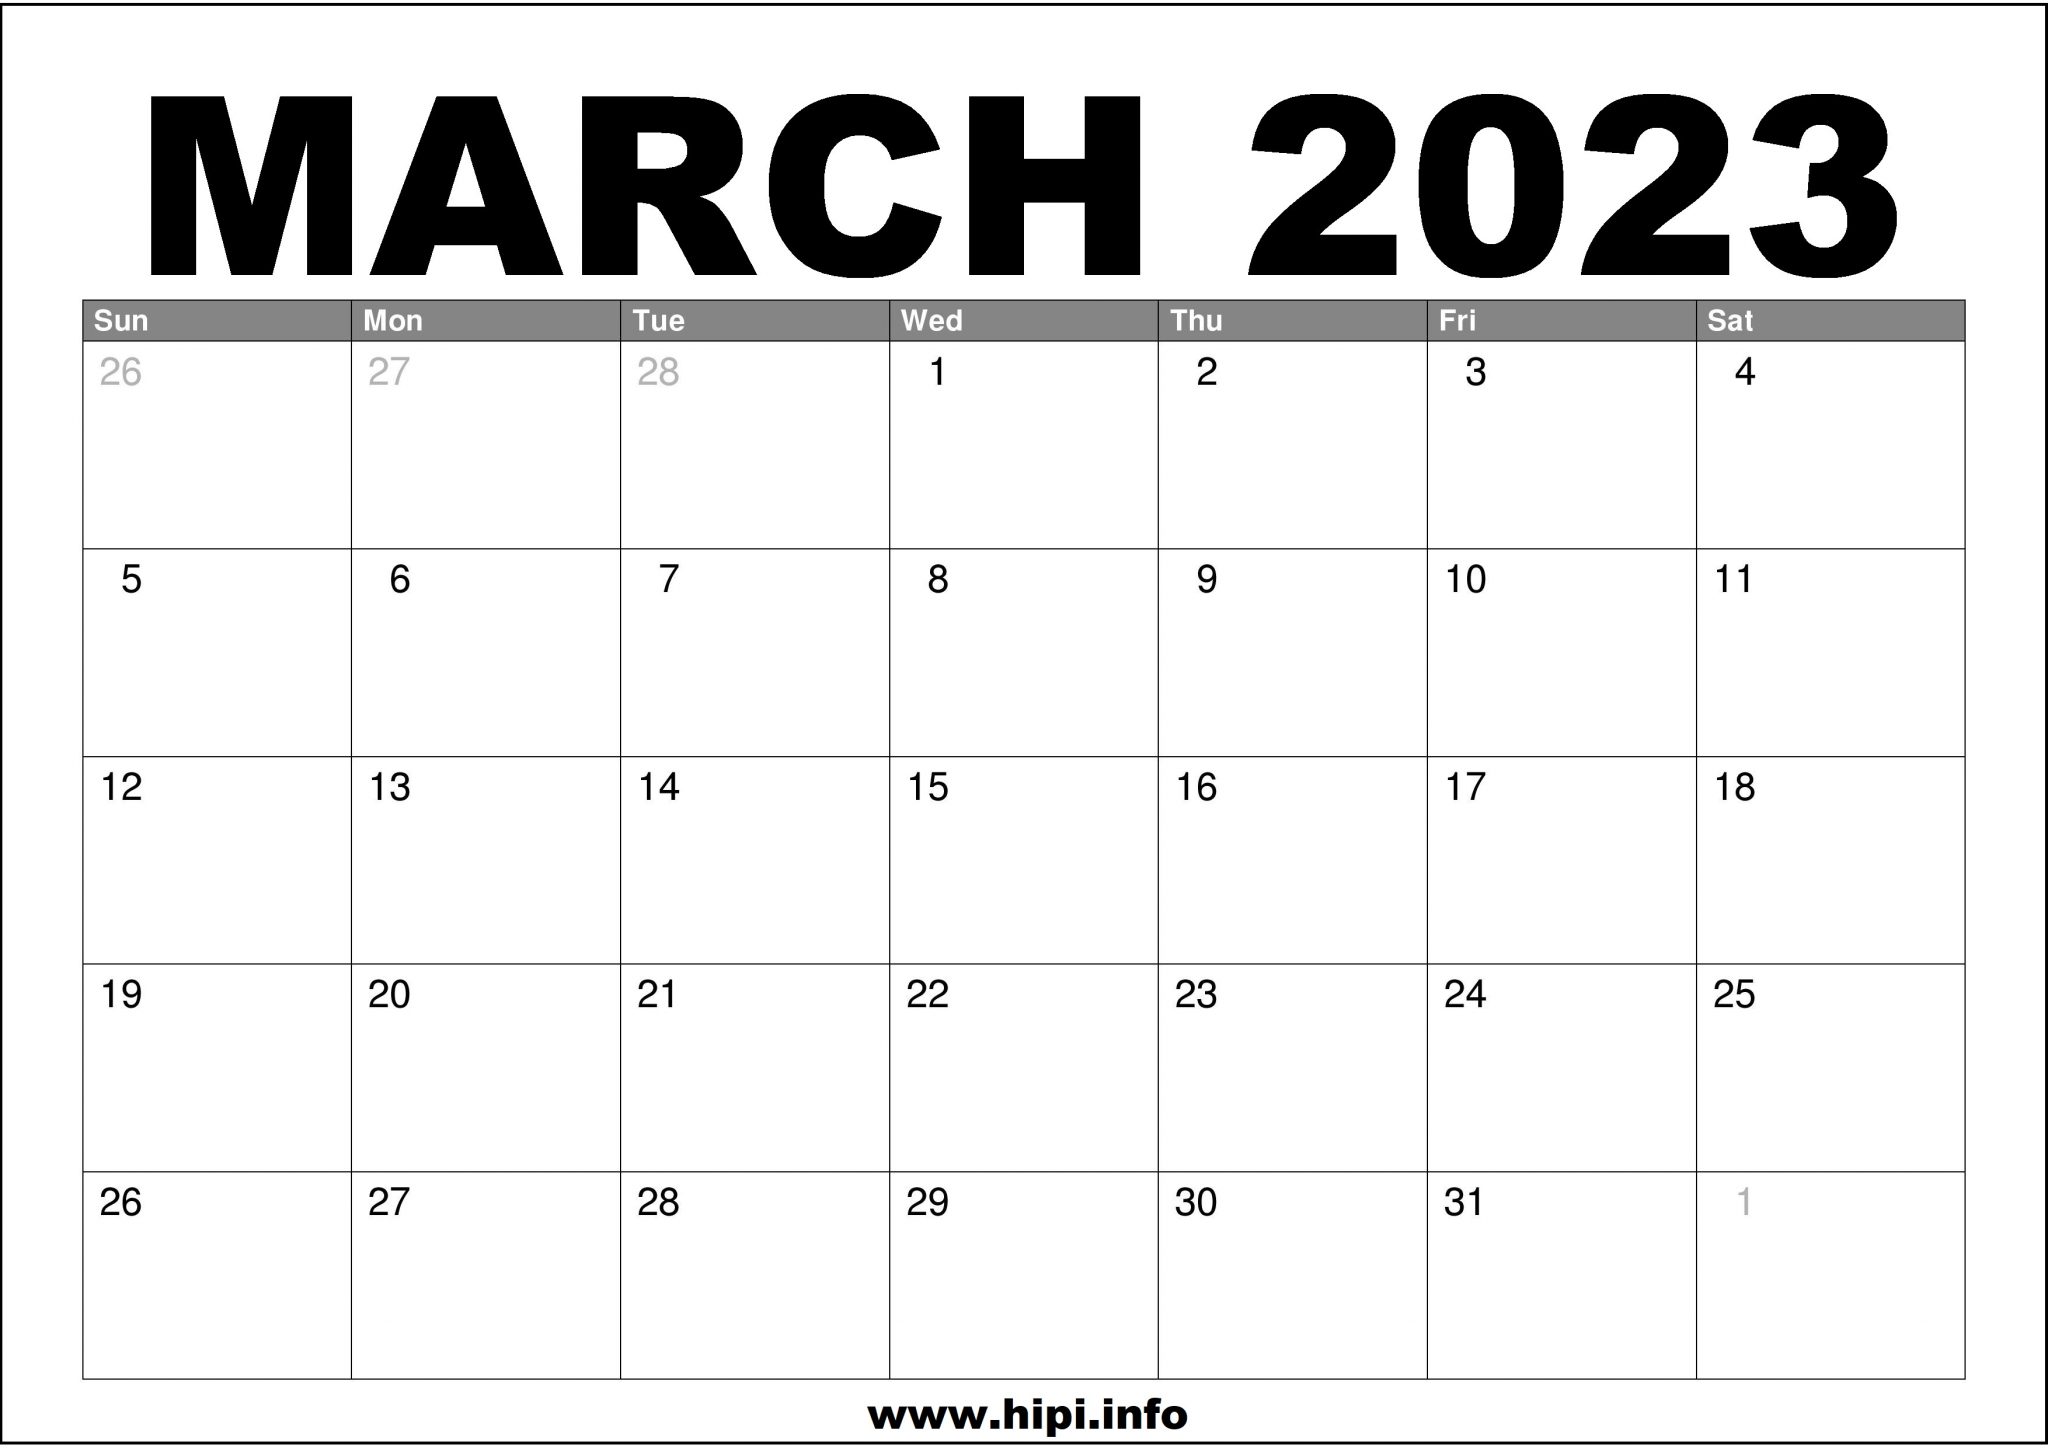 march-2023-calendar-free-printable-hipi-info